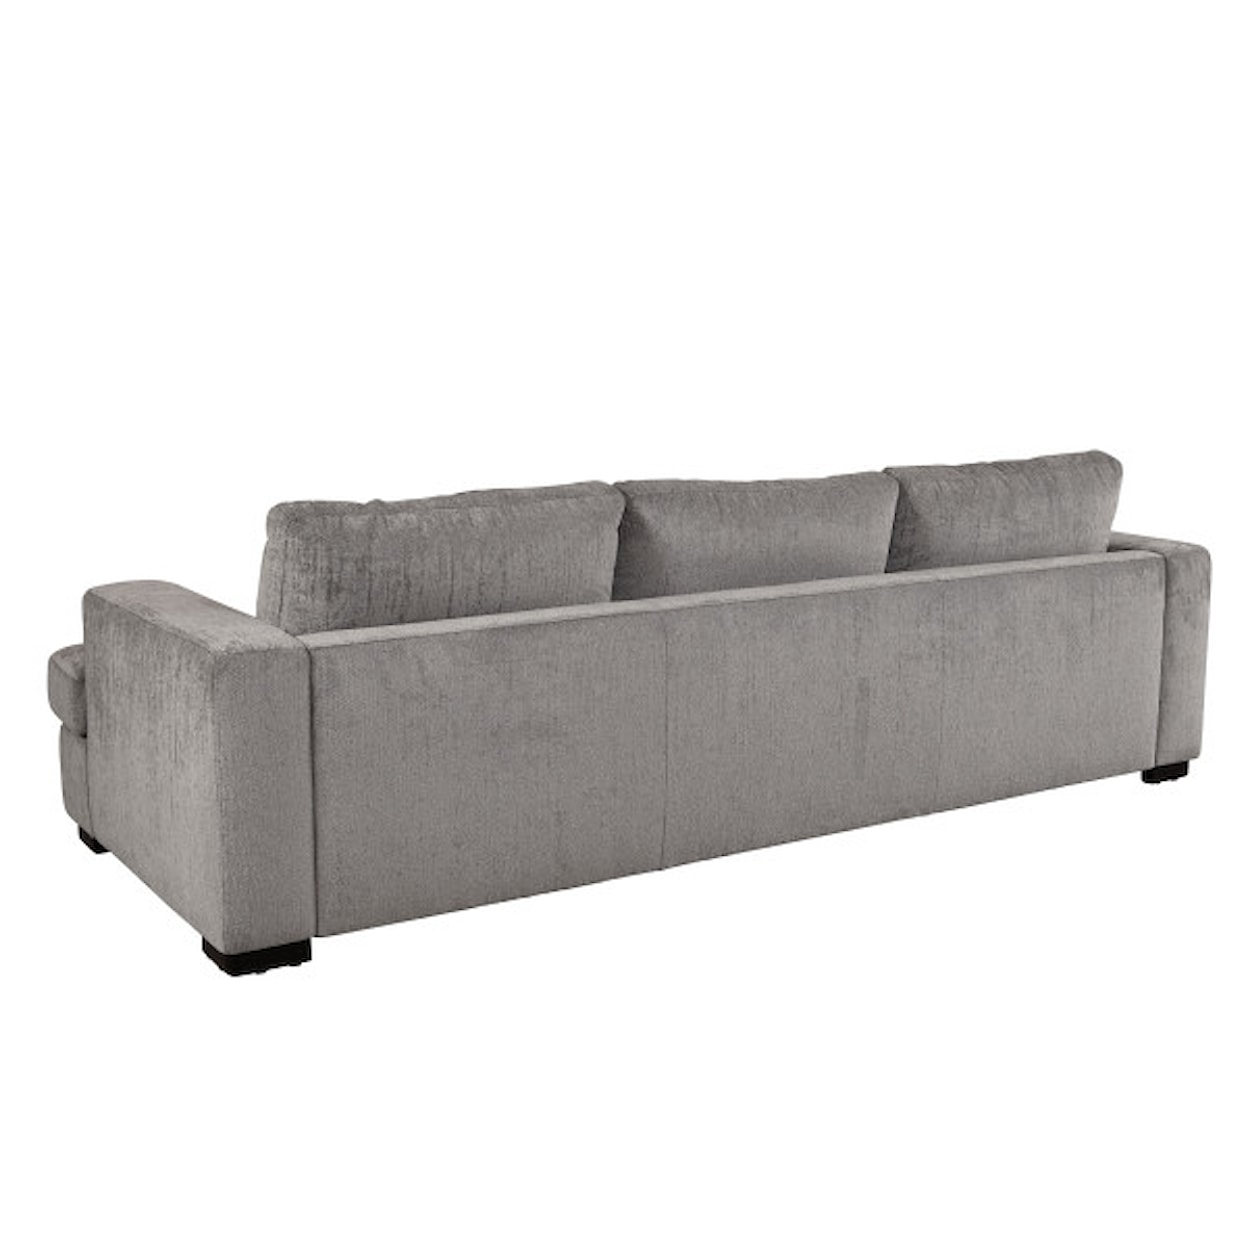 Pulaski Furniture Rockaway Sofa